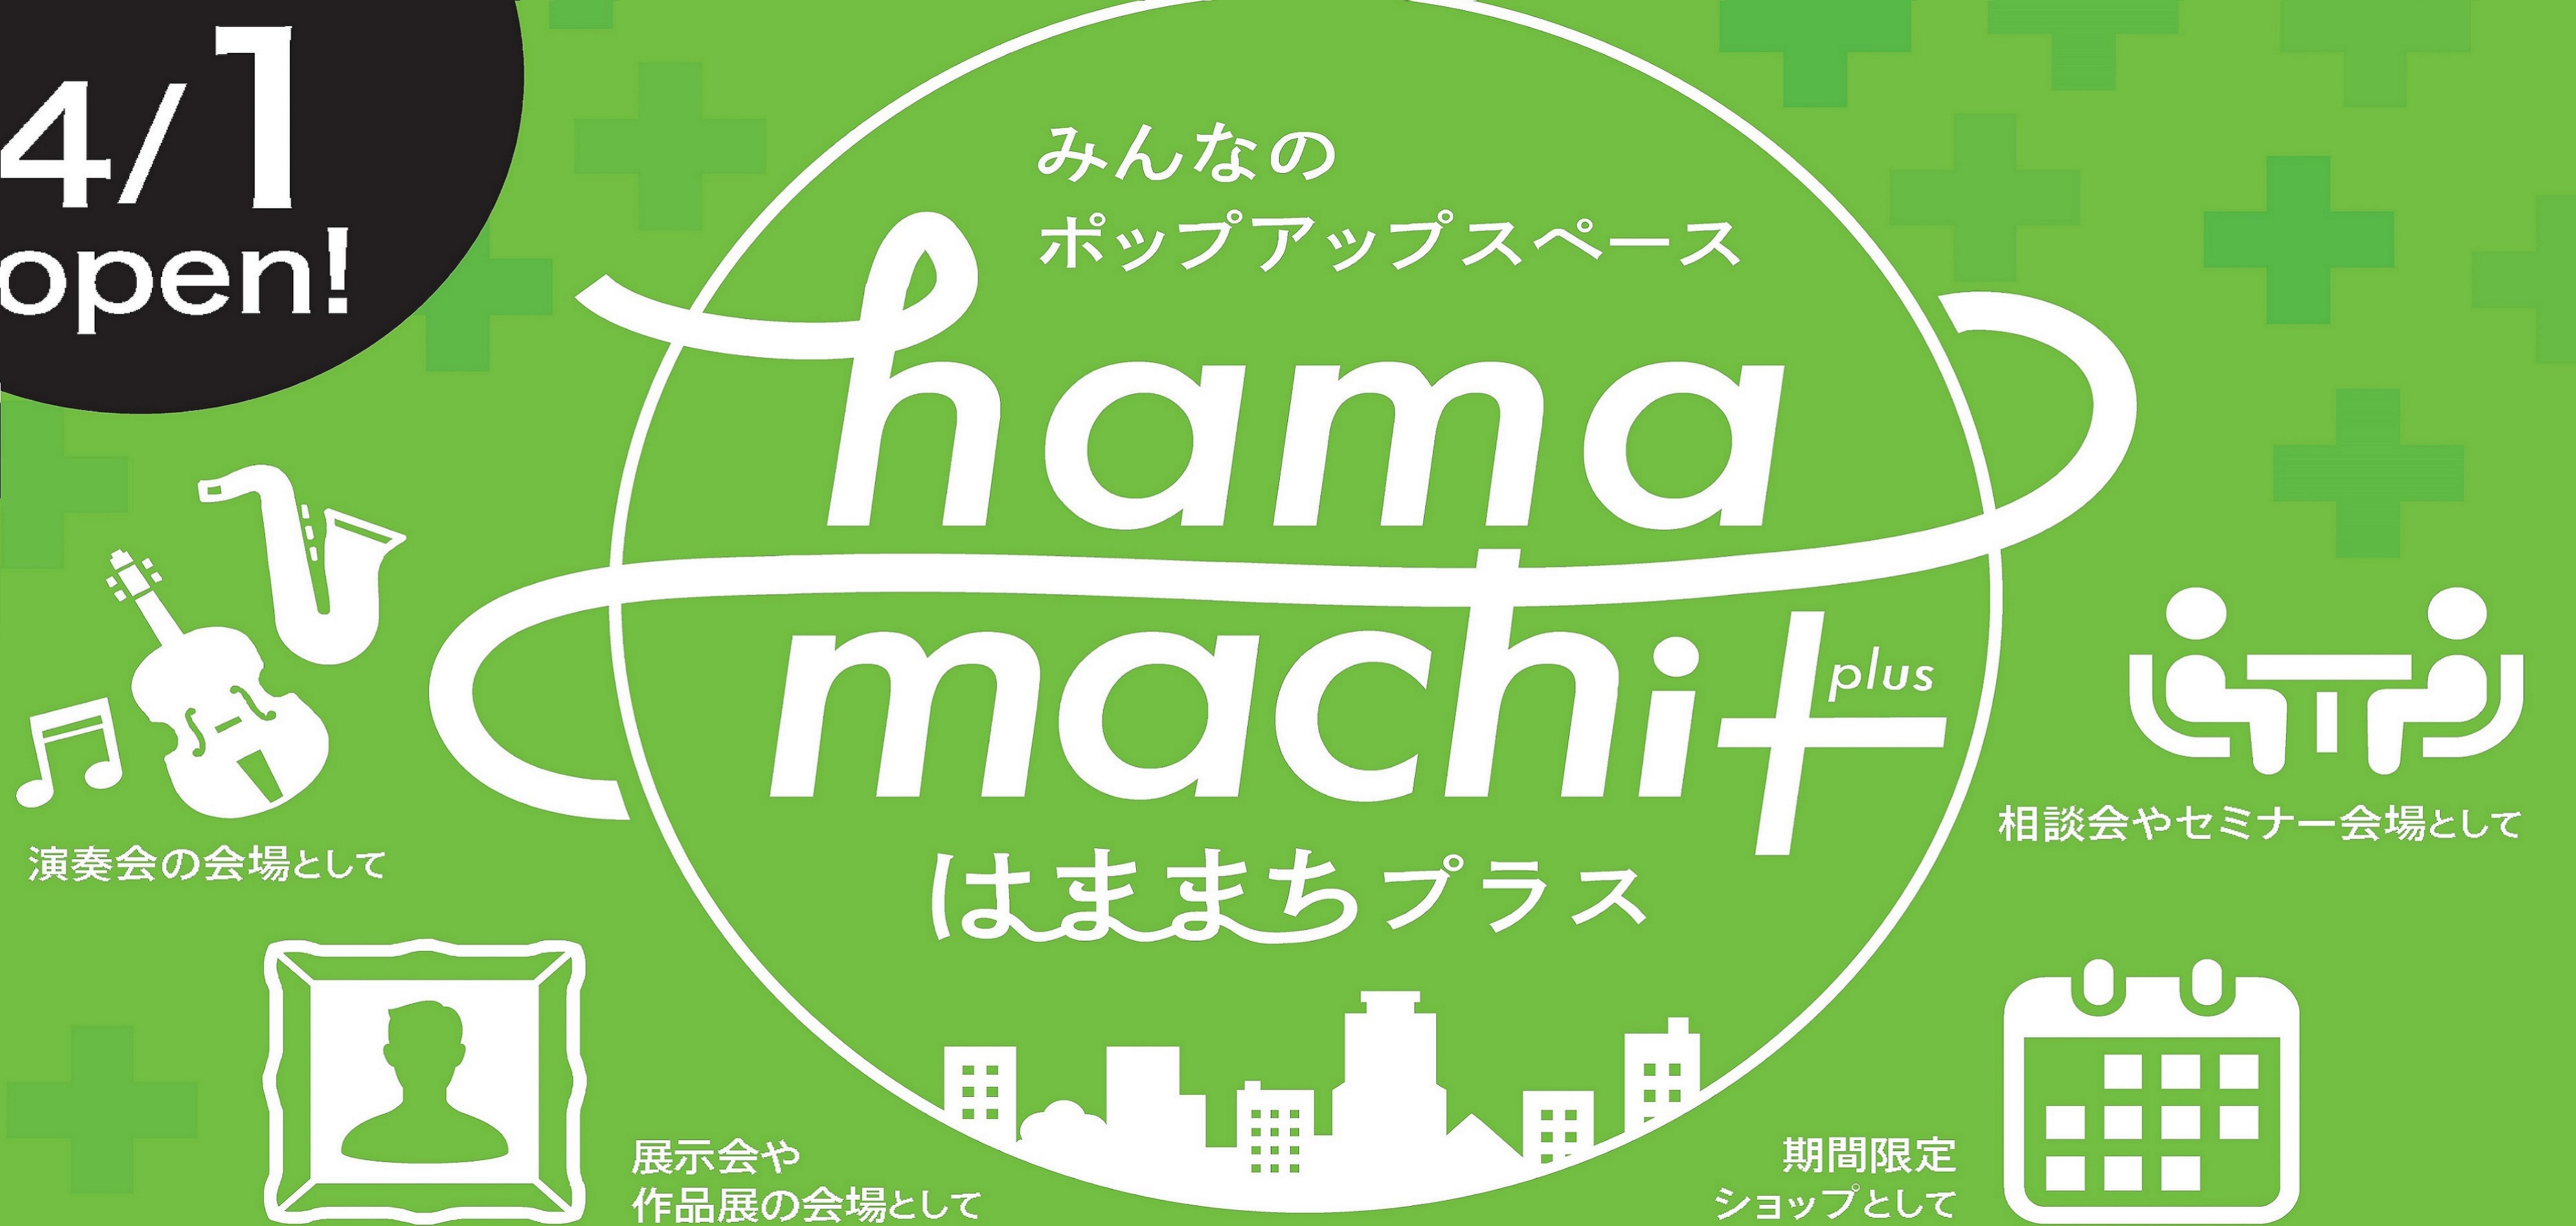 みんなのポップアップスペース hamamachi+